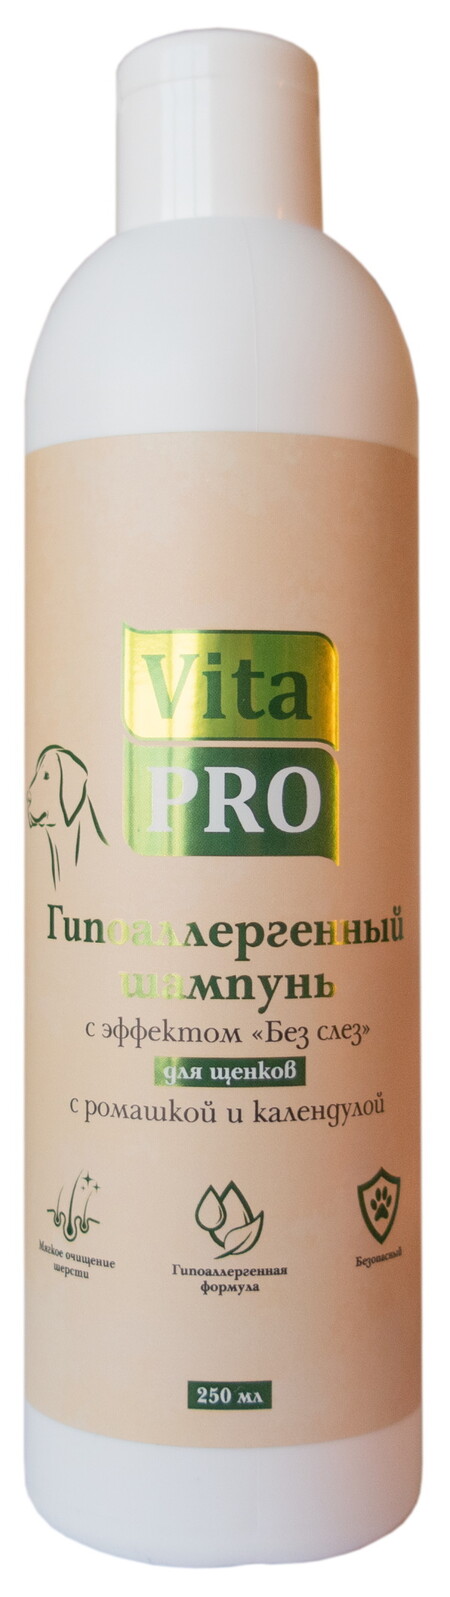 Vita Pro Без слез 250 мл шампунь для щенков гипоаллергенный с ромашкой и календулой